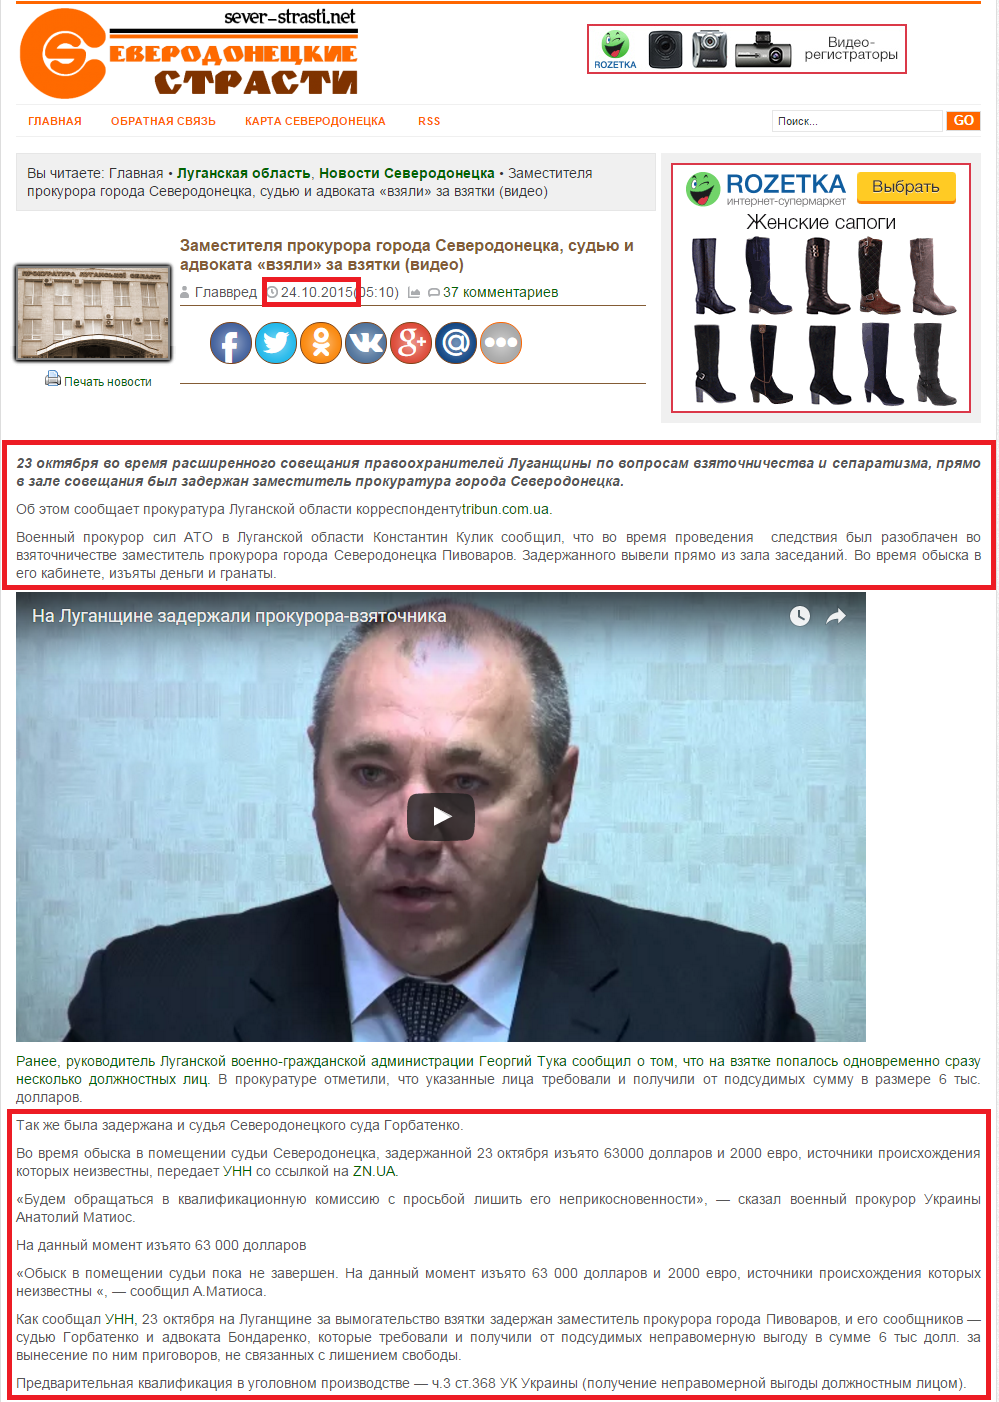 http://news.sever-strasti.com/2015/10/24/zamestitelya-prokurora-goroda-severodonecka-sudyu-i-advokata-vzyali-za-vzyatki-video/